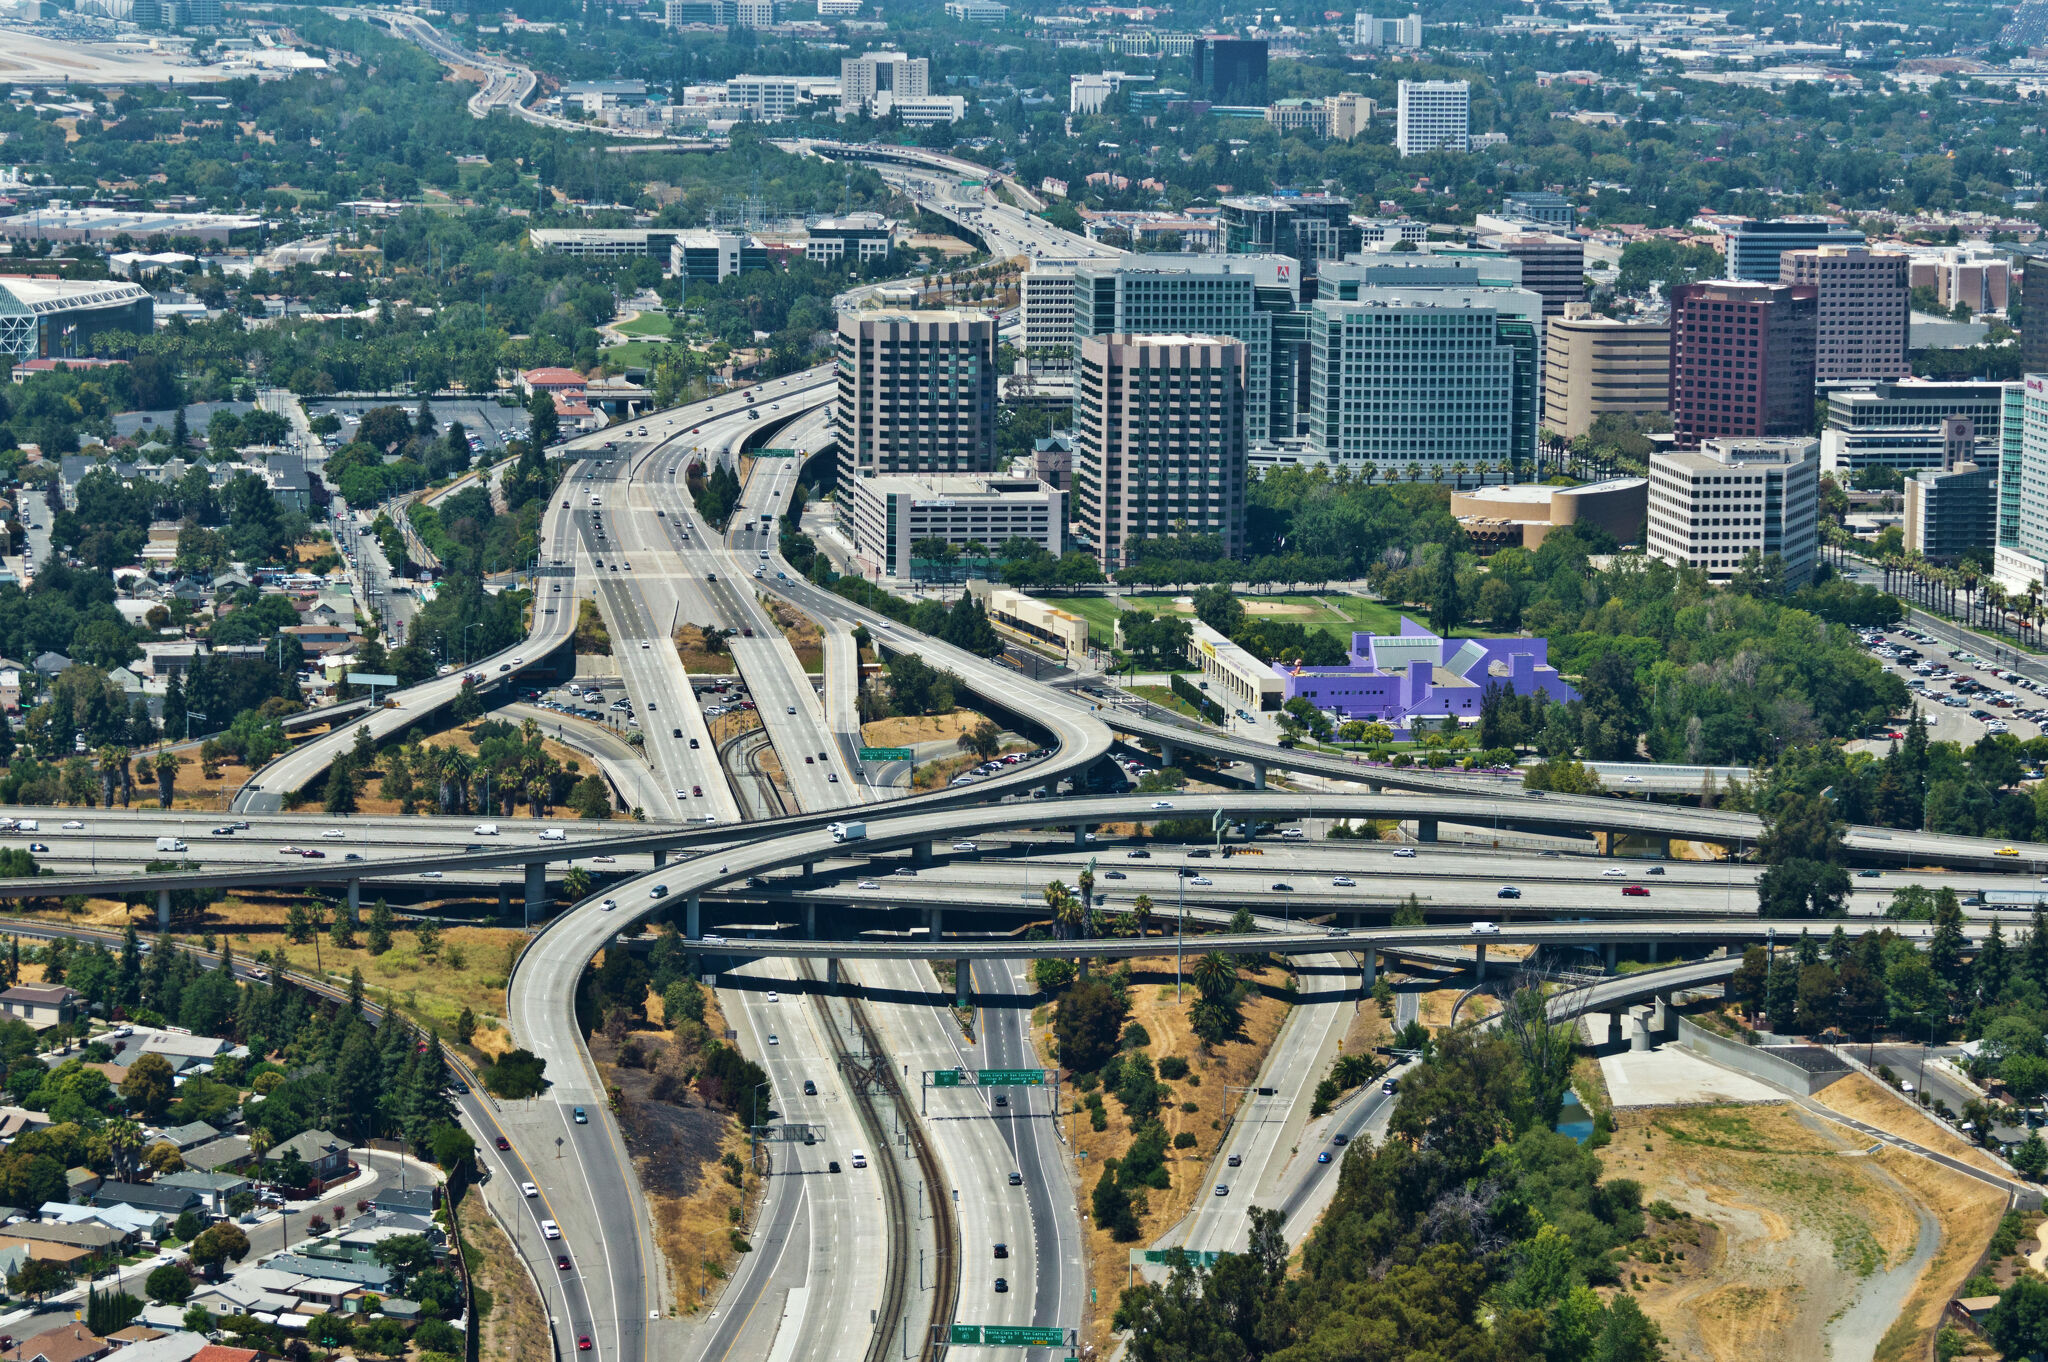 湾区成为加州人口增长最快地区之一